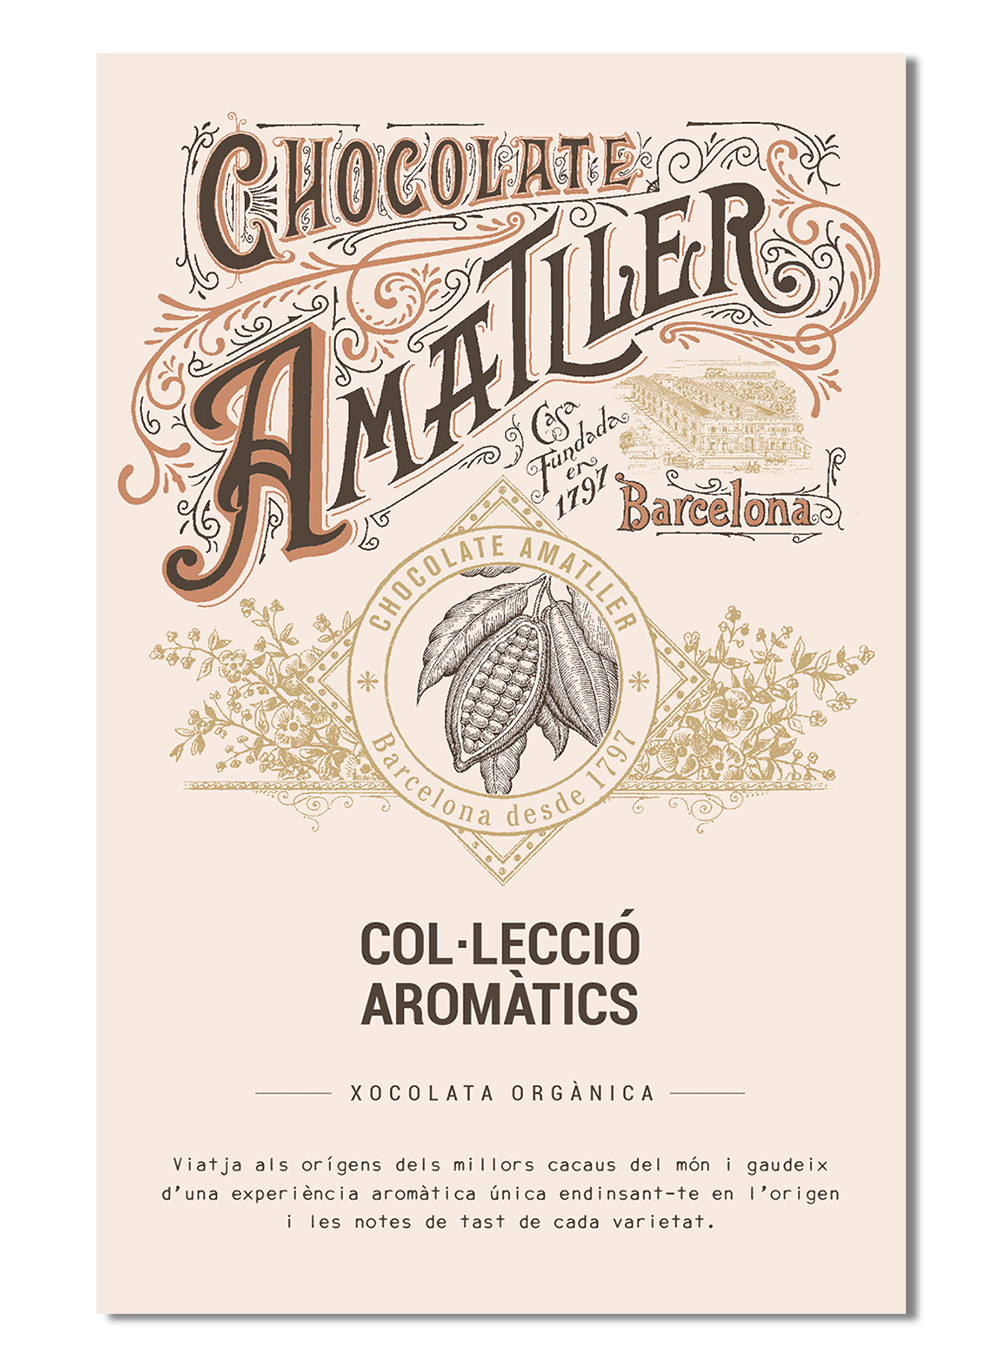 Folleto “Colección Aromatics” de Chocolate Amatller